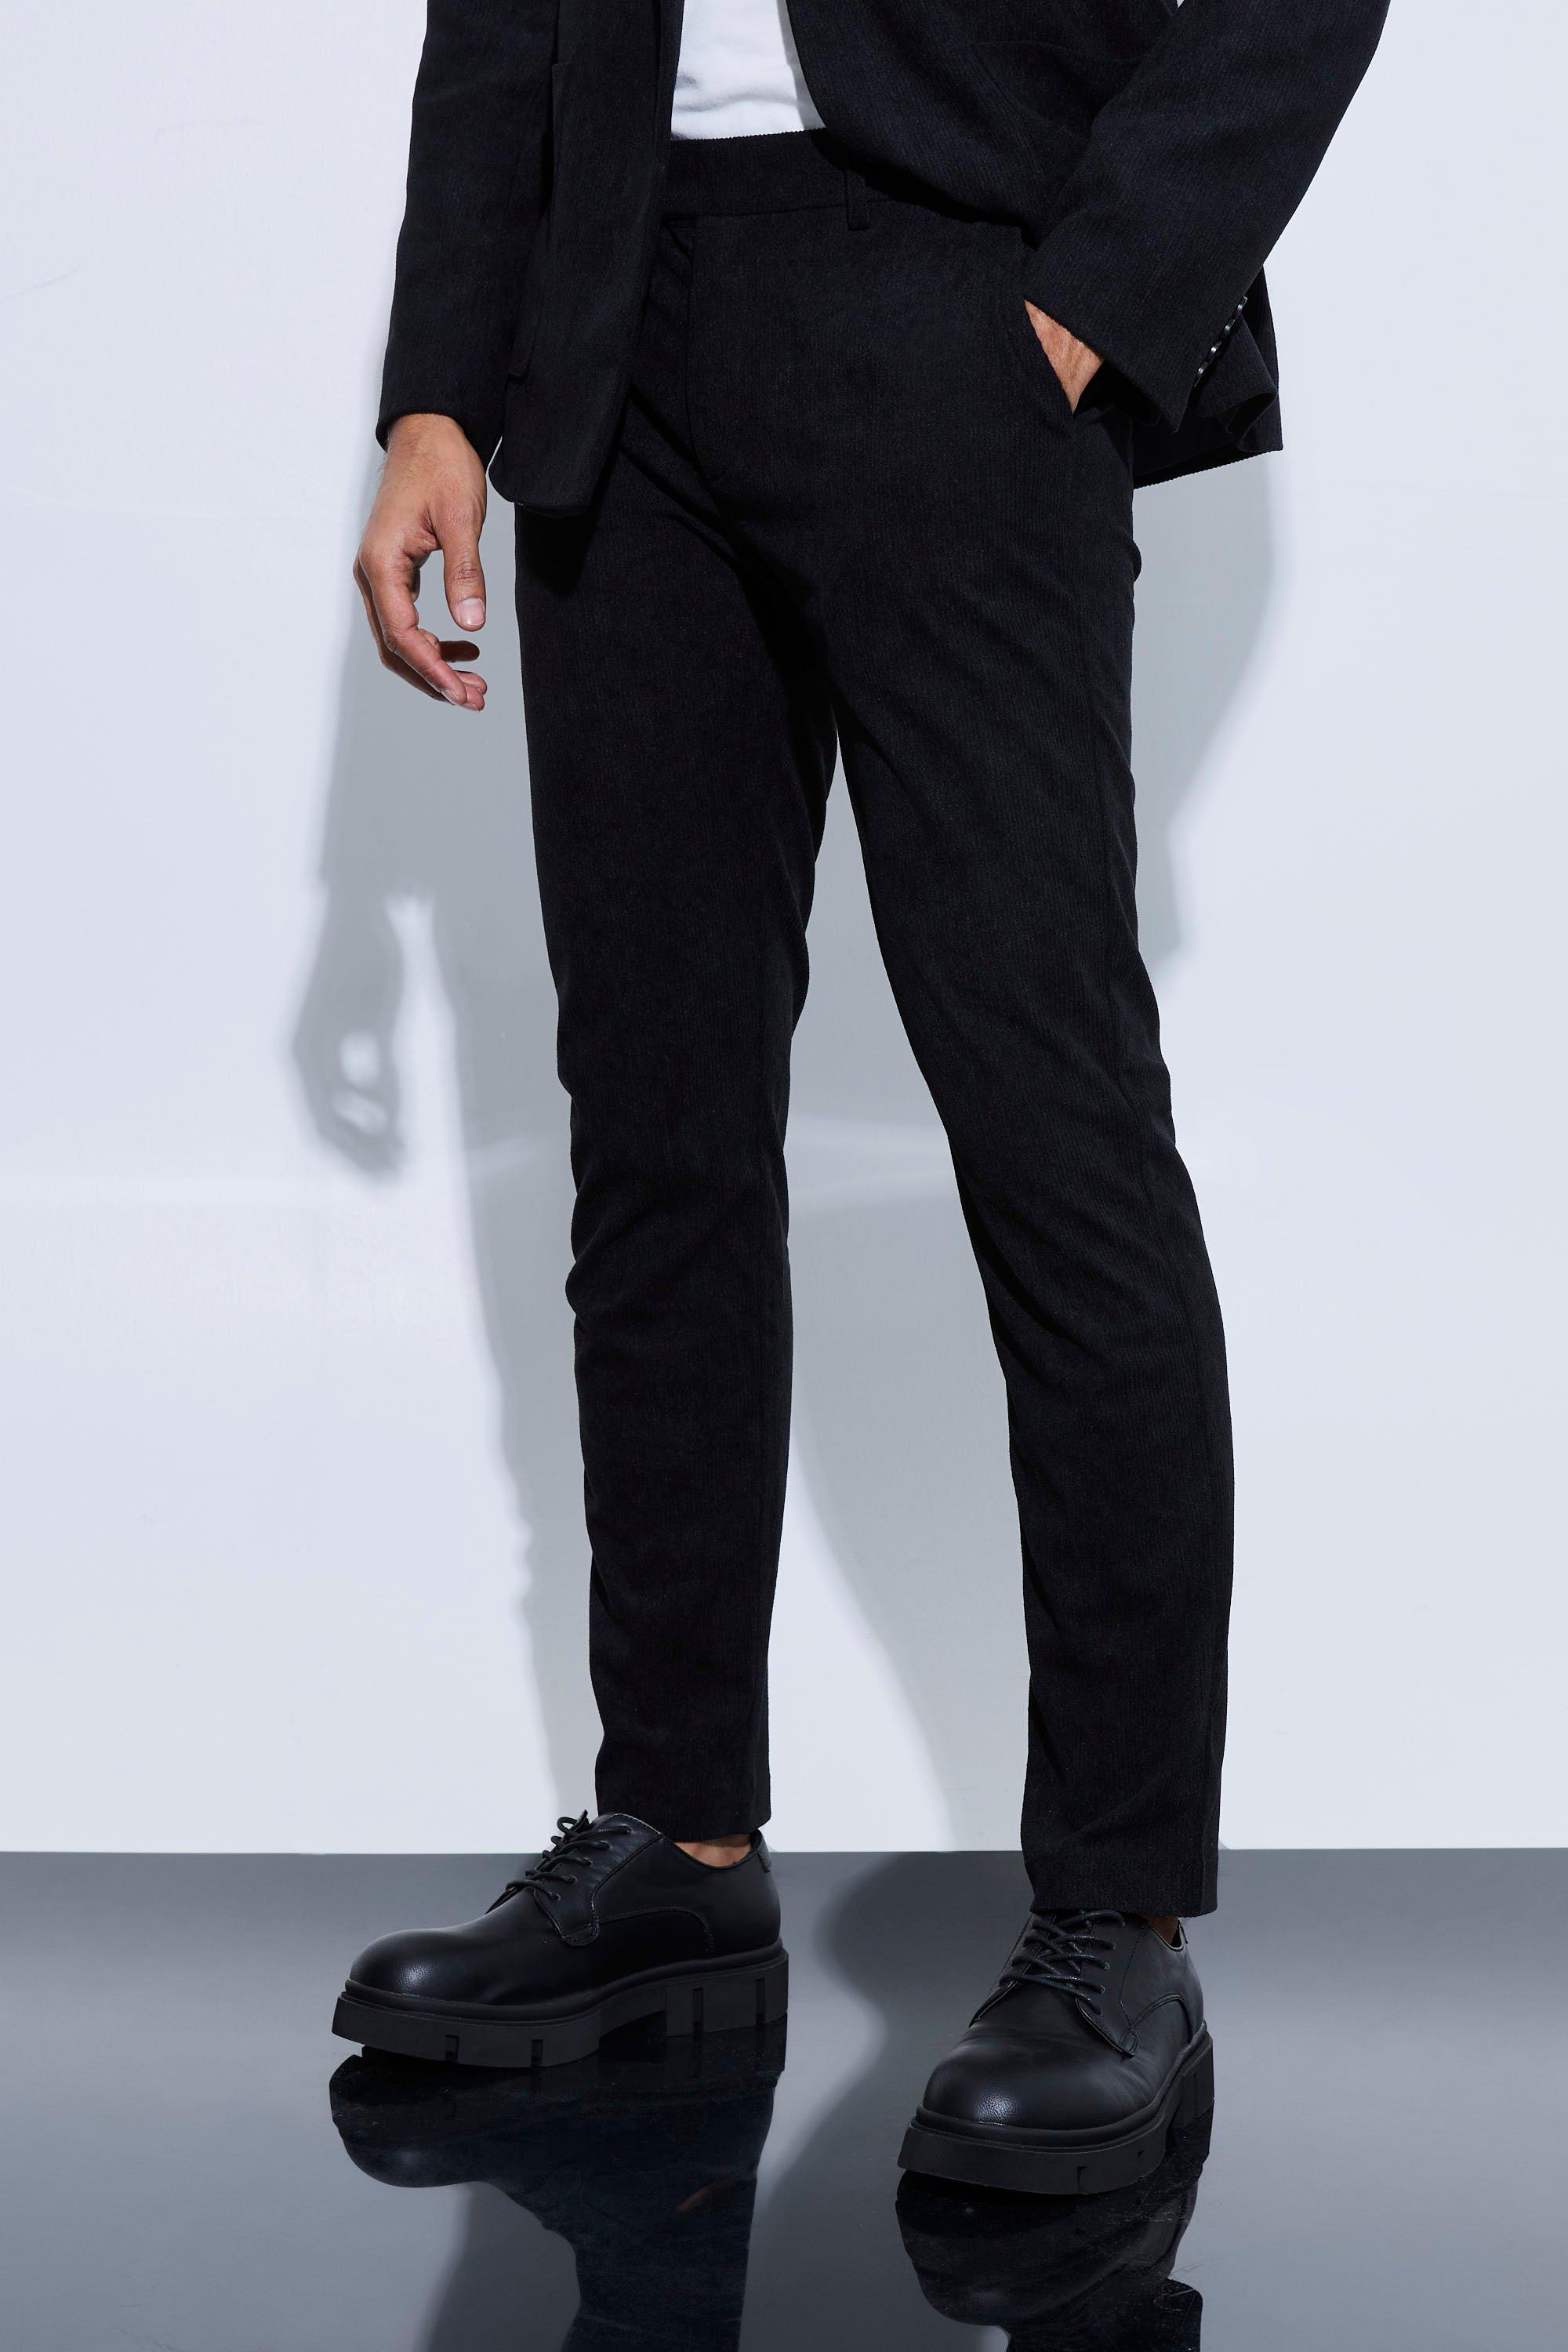 pantalon de tailleur skinny homme - noir - 28, noir